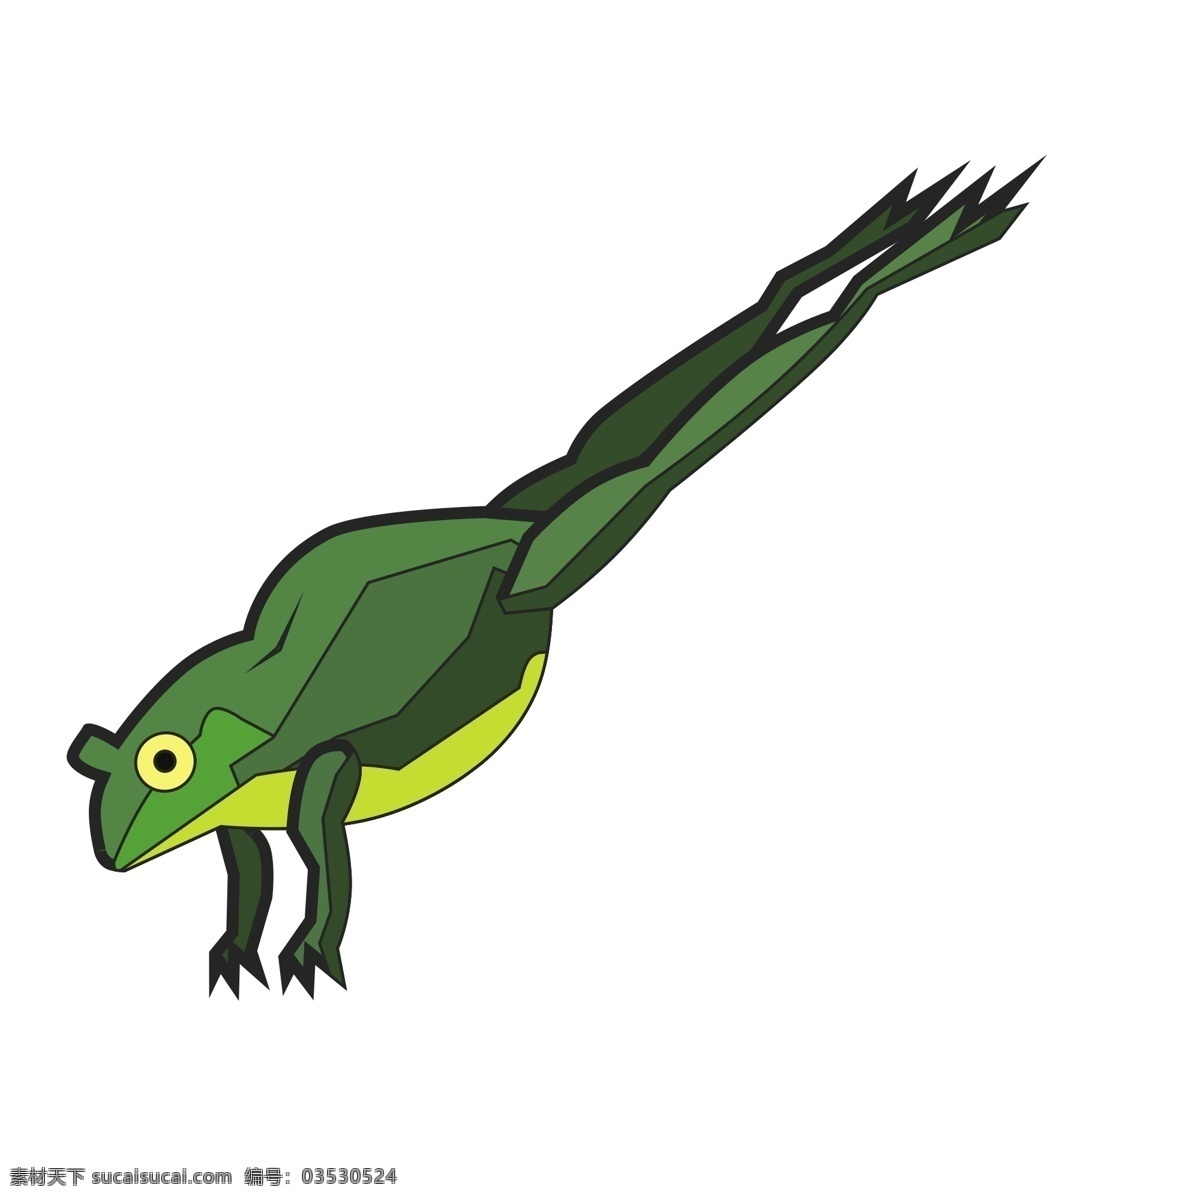 只 跳 绿色 青蛙 商用 元素 动物 黄色眼睛 绘画 蹬腿